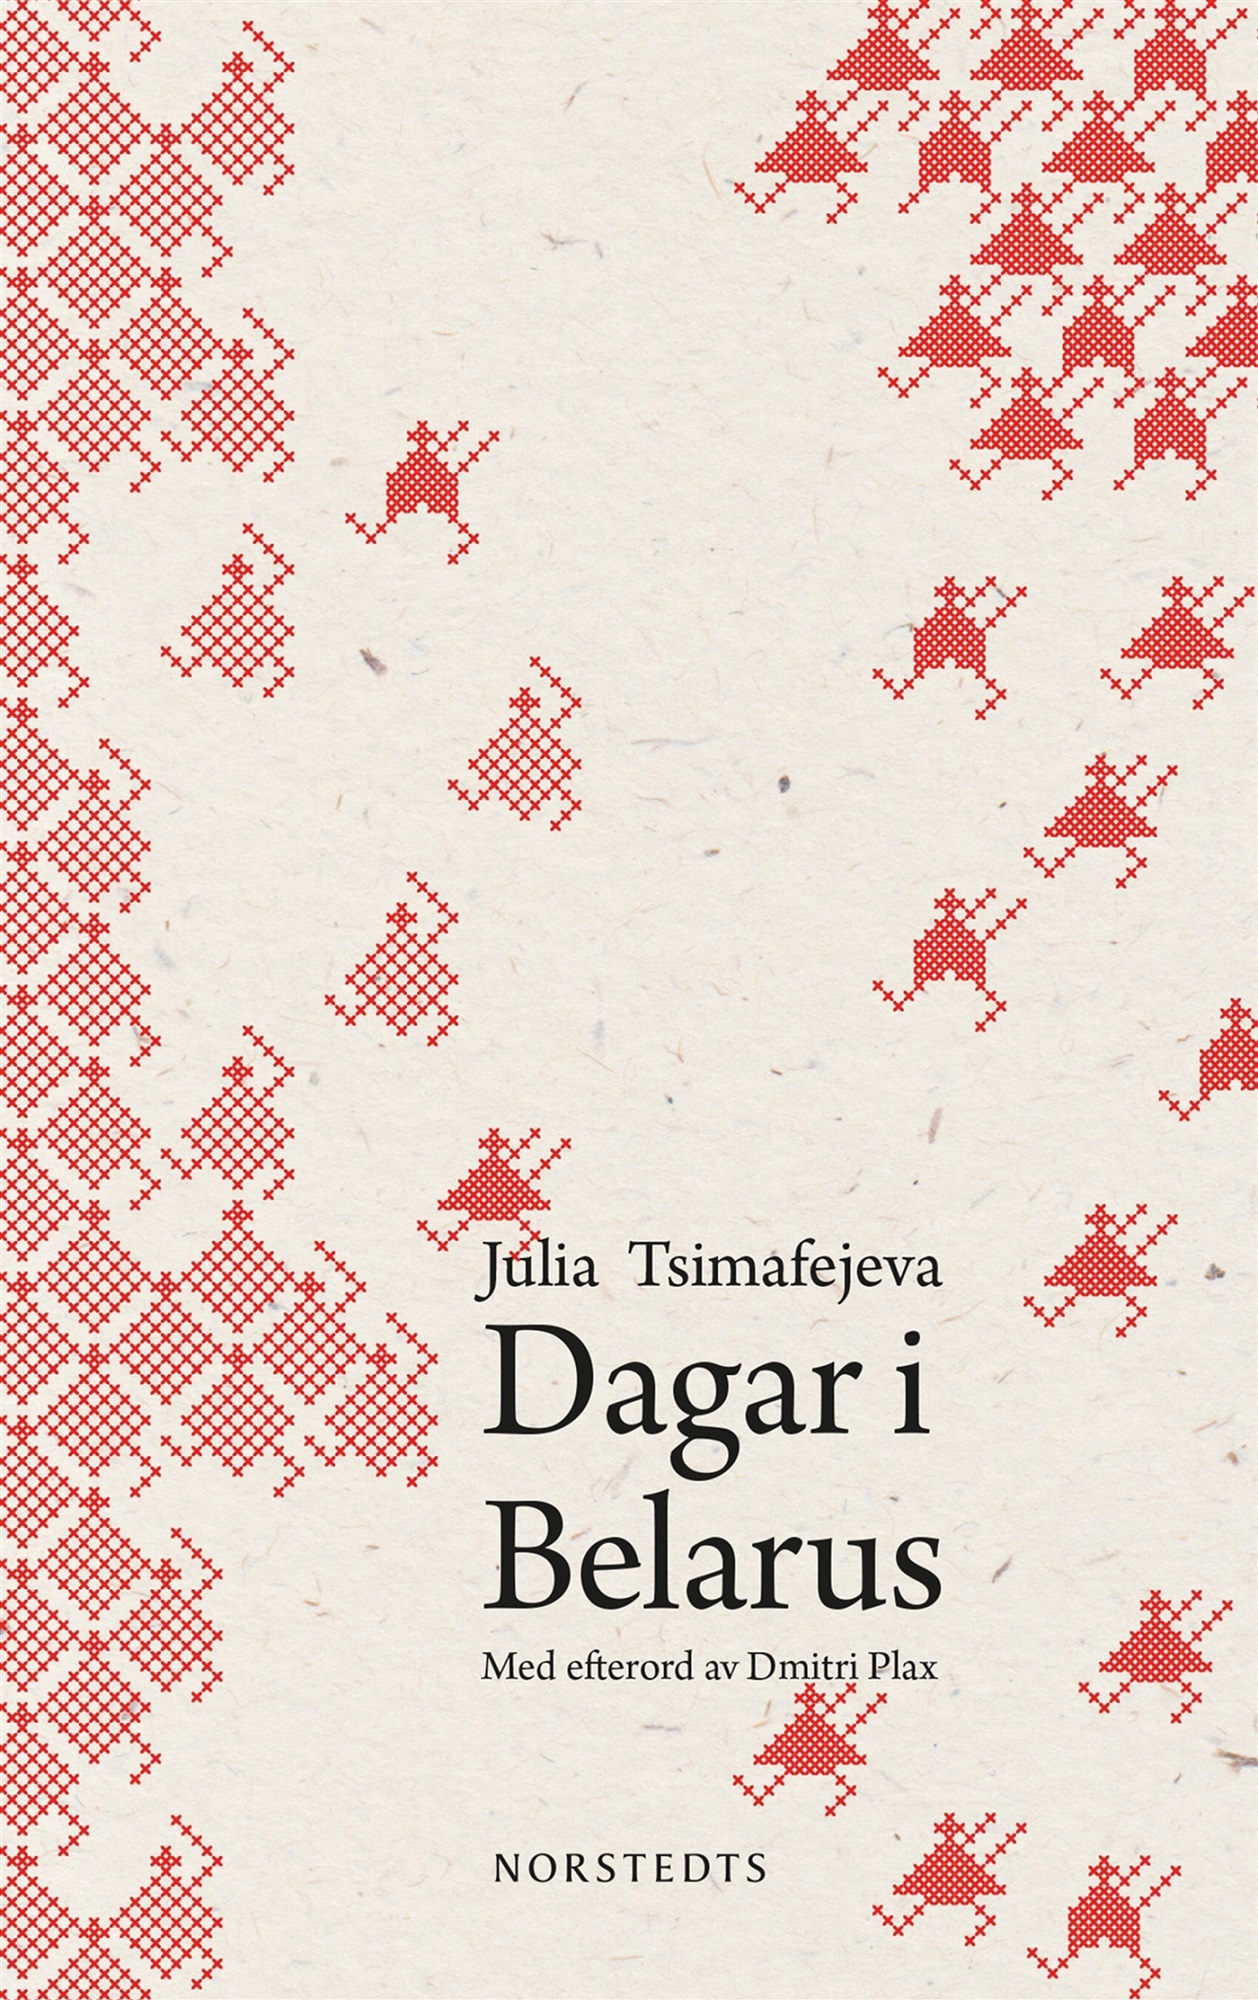 Dagar i Belarus av Julia Tsimafejeva